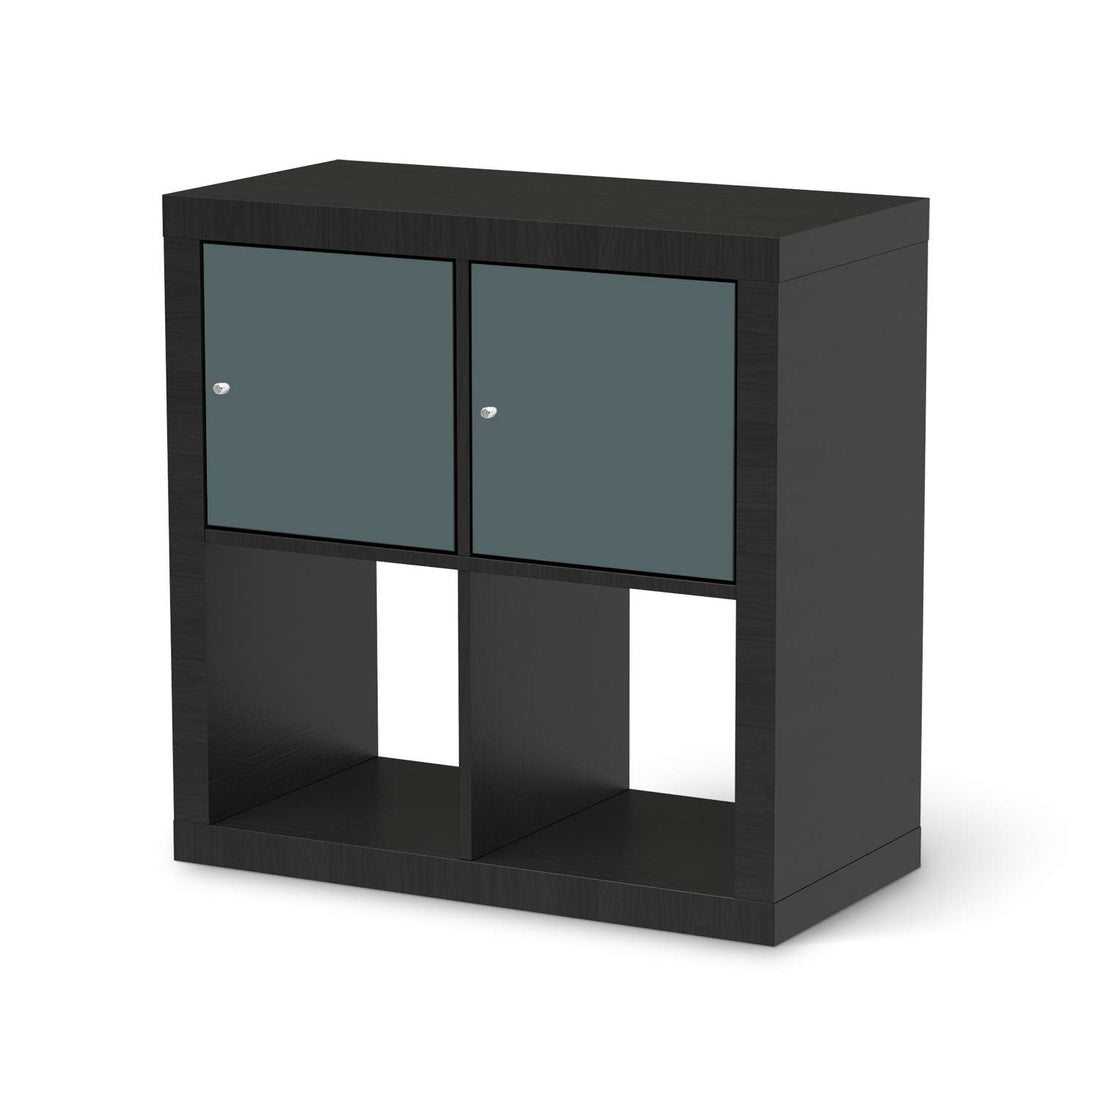 Möbelfolie Blaugrau Light - IKEA Kallax Regal 2 Türen Quer - schwarz